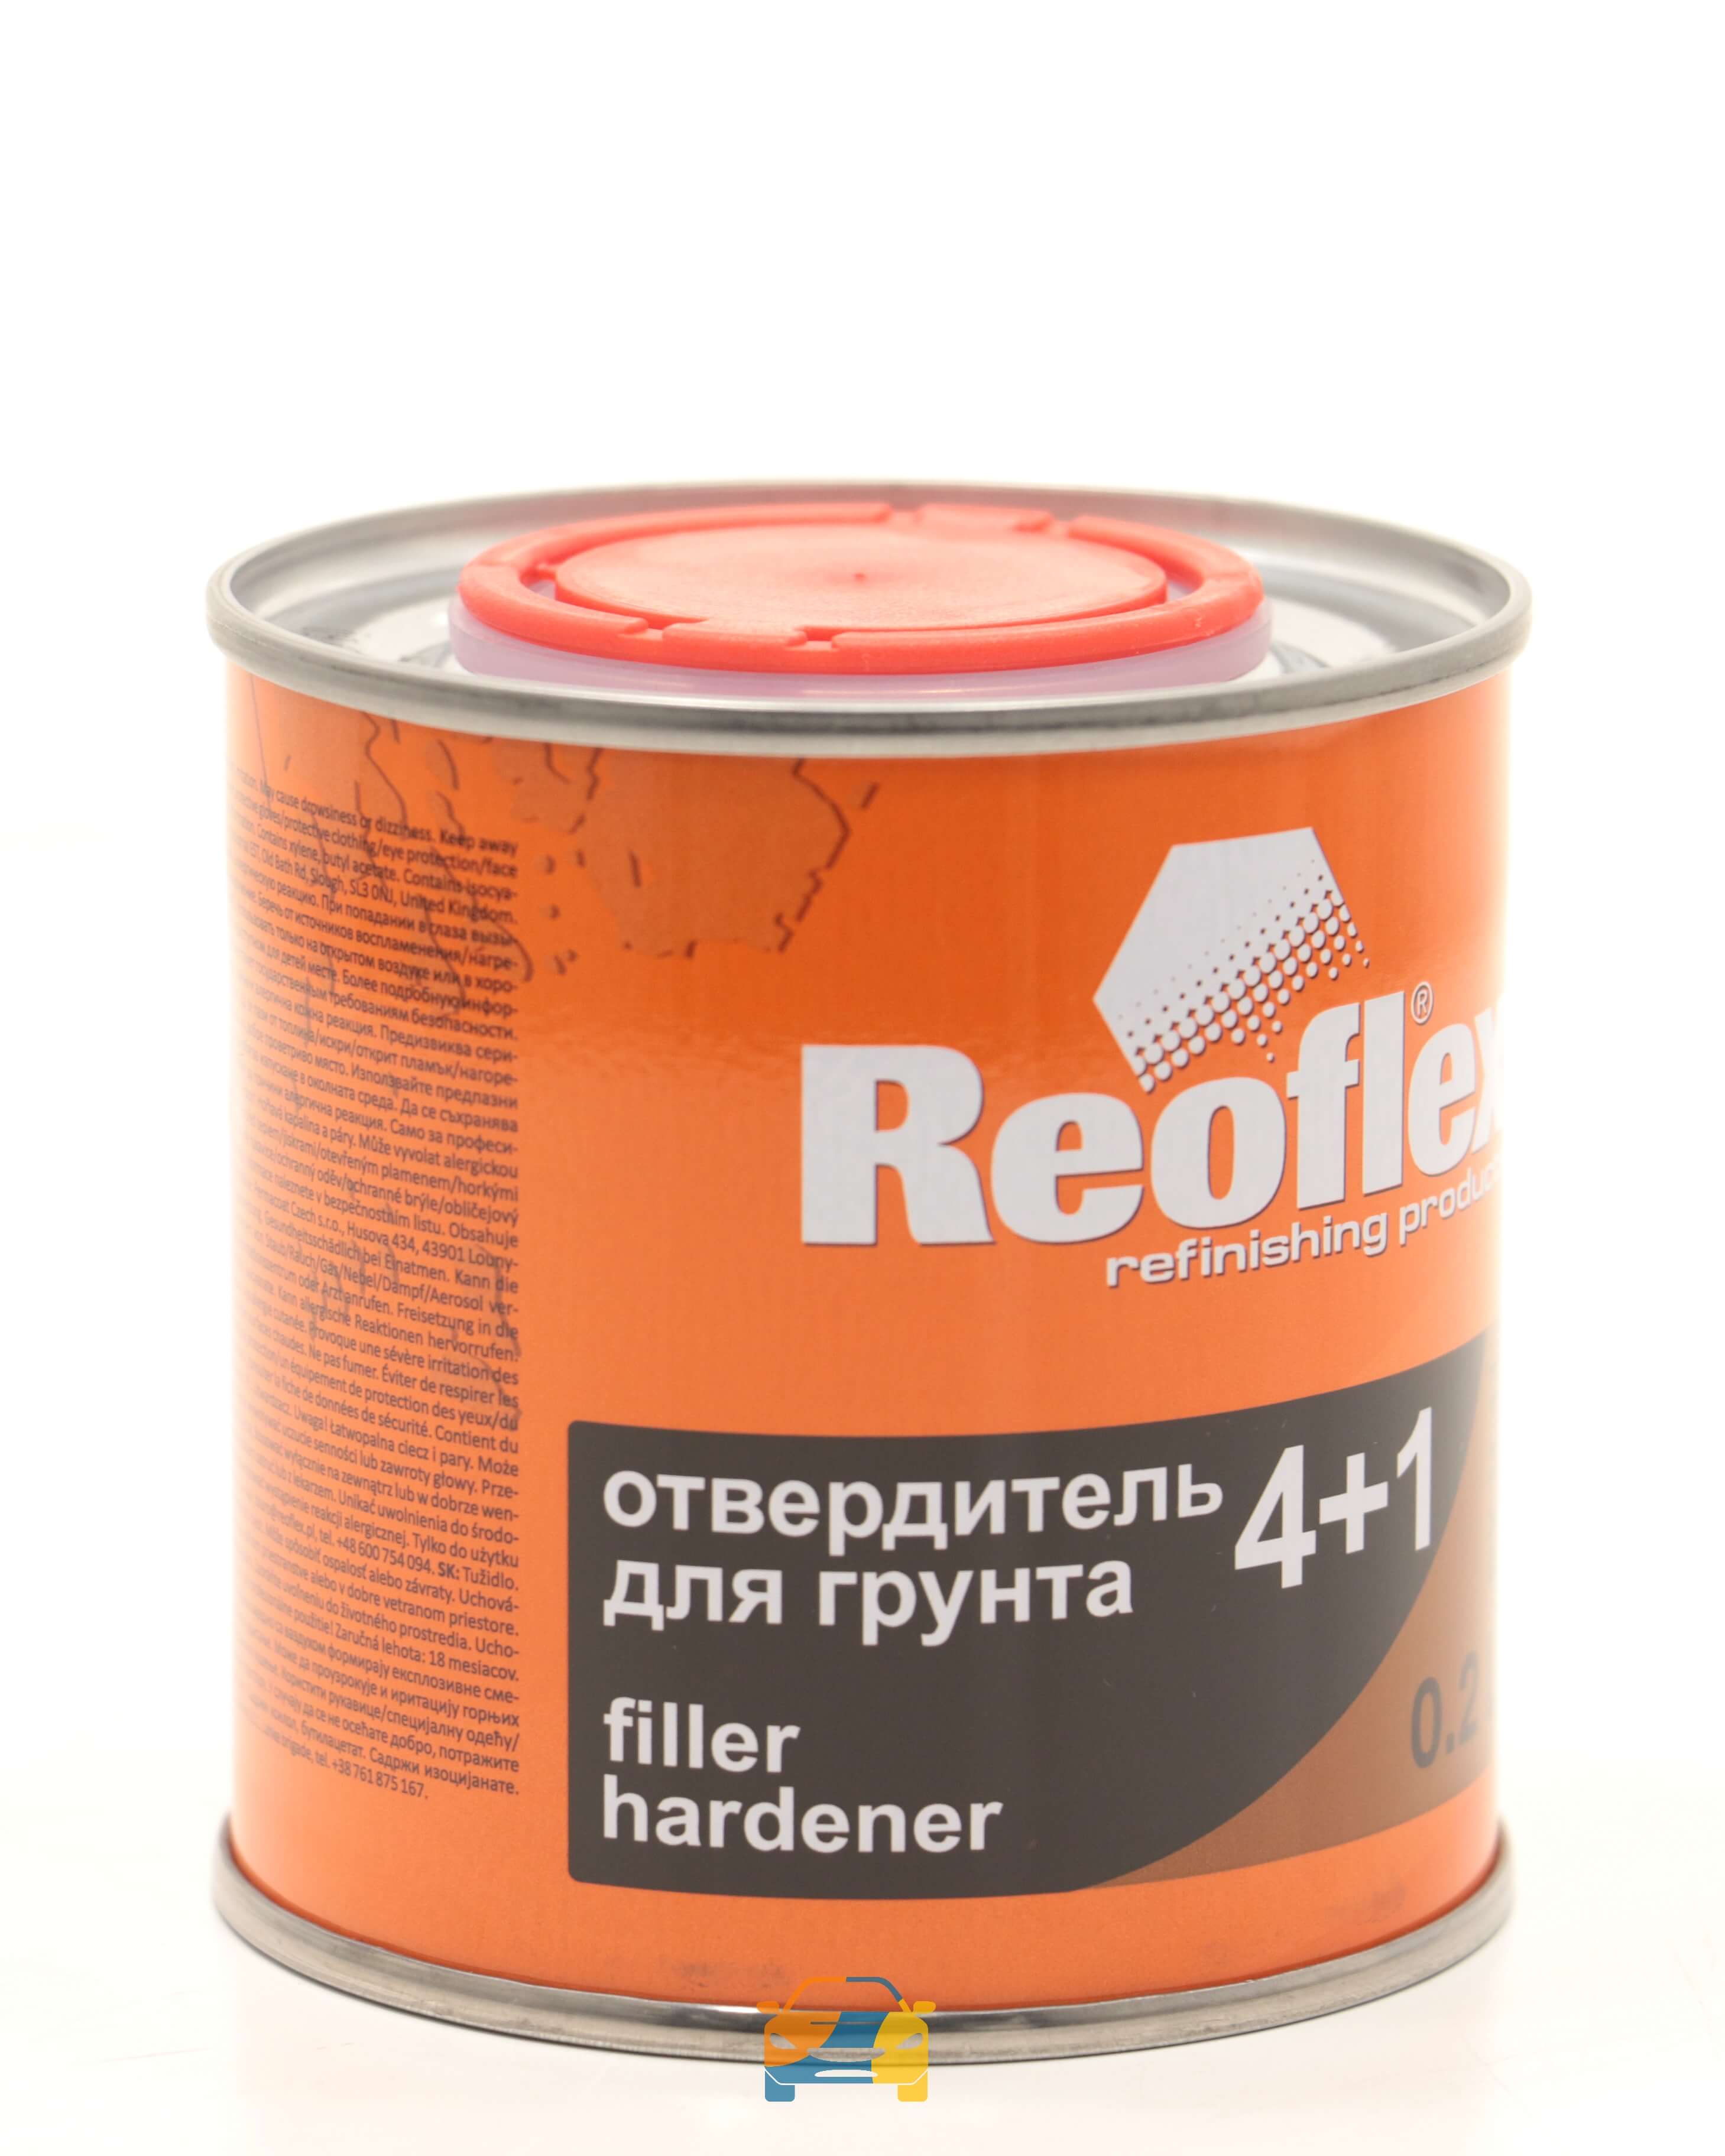 Отвердитель Reoflex для грунта 4+1